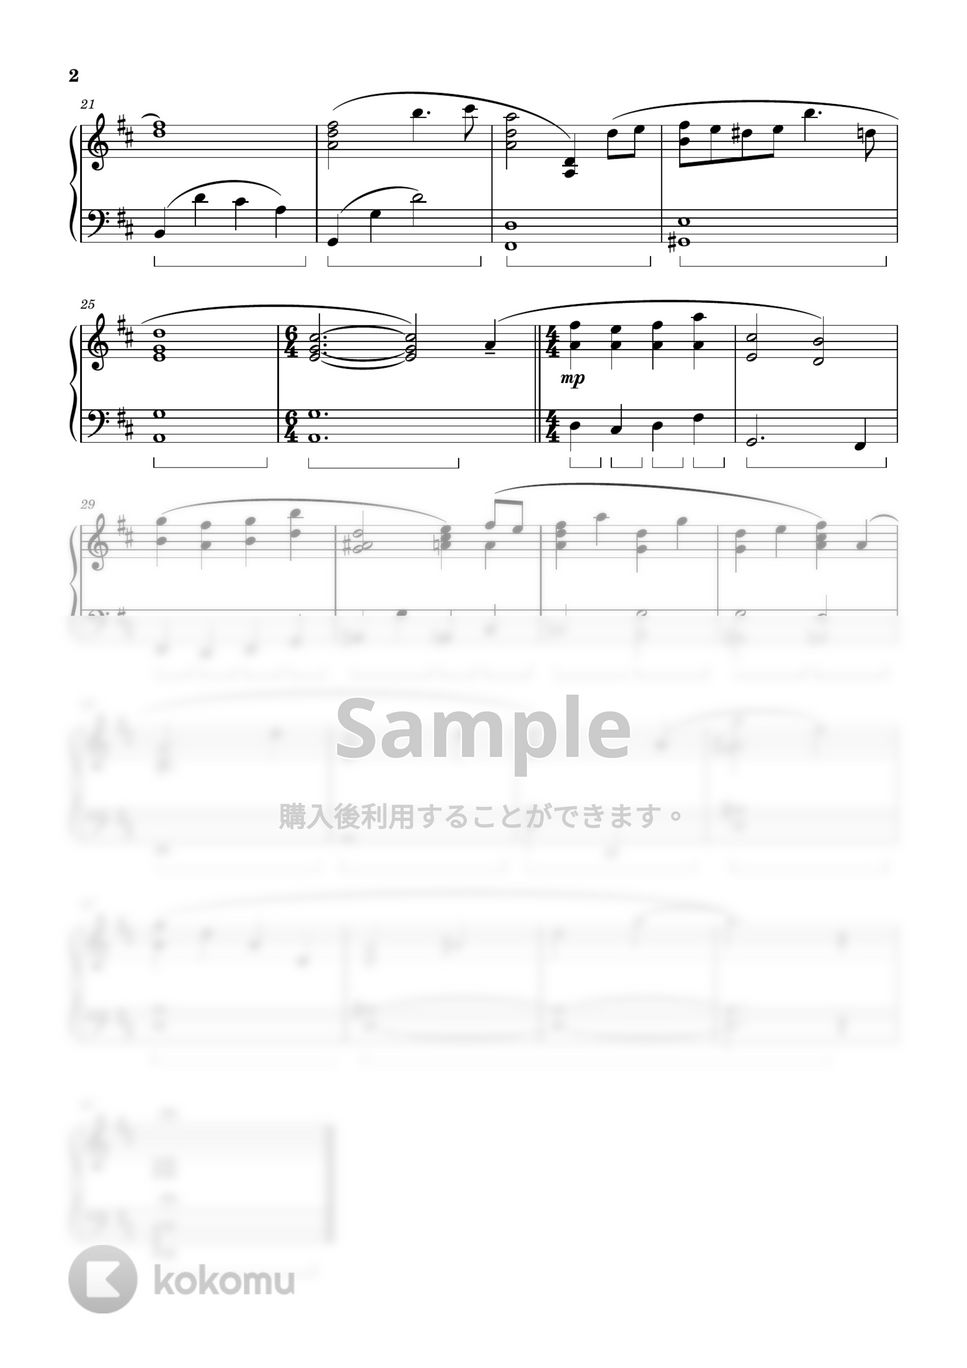 ドラマ「監察医 朝顔2」 - 監察医 朝顔 (Piano Version) by ちゃんRINA。